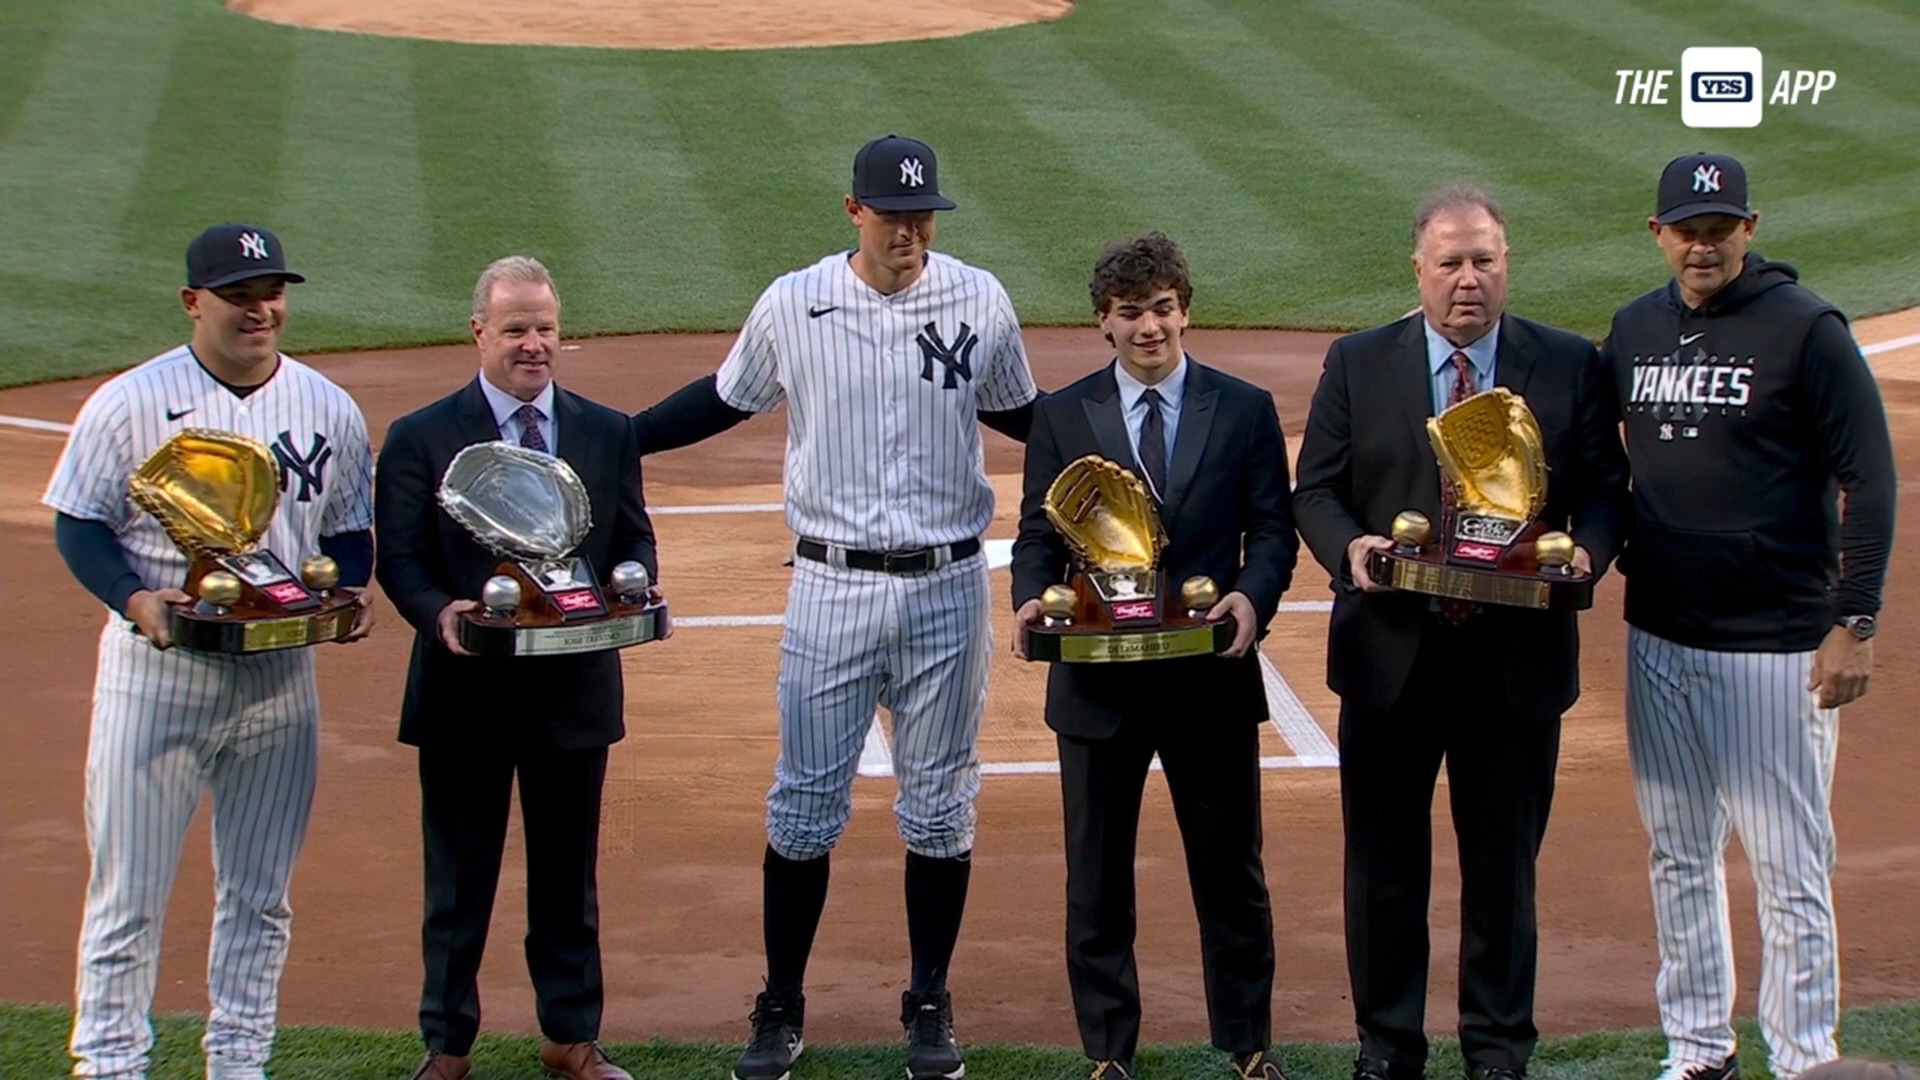 Yankees' Jose Trevino and DJ LeMahieu win Gold Glove awards